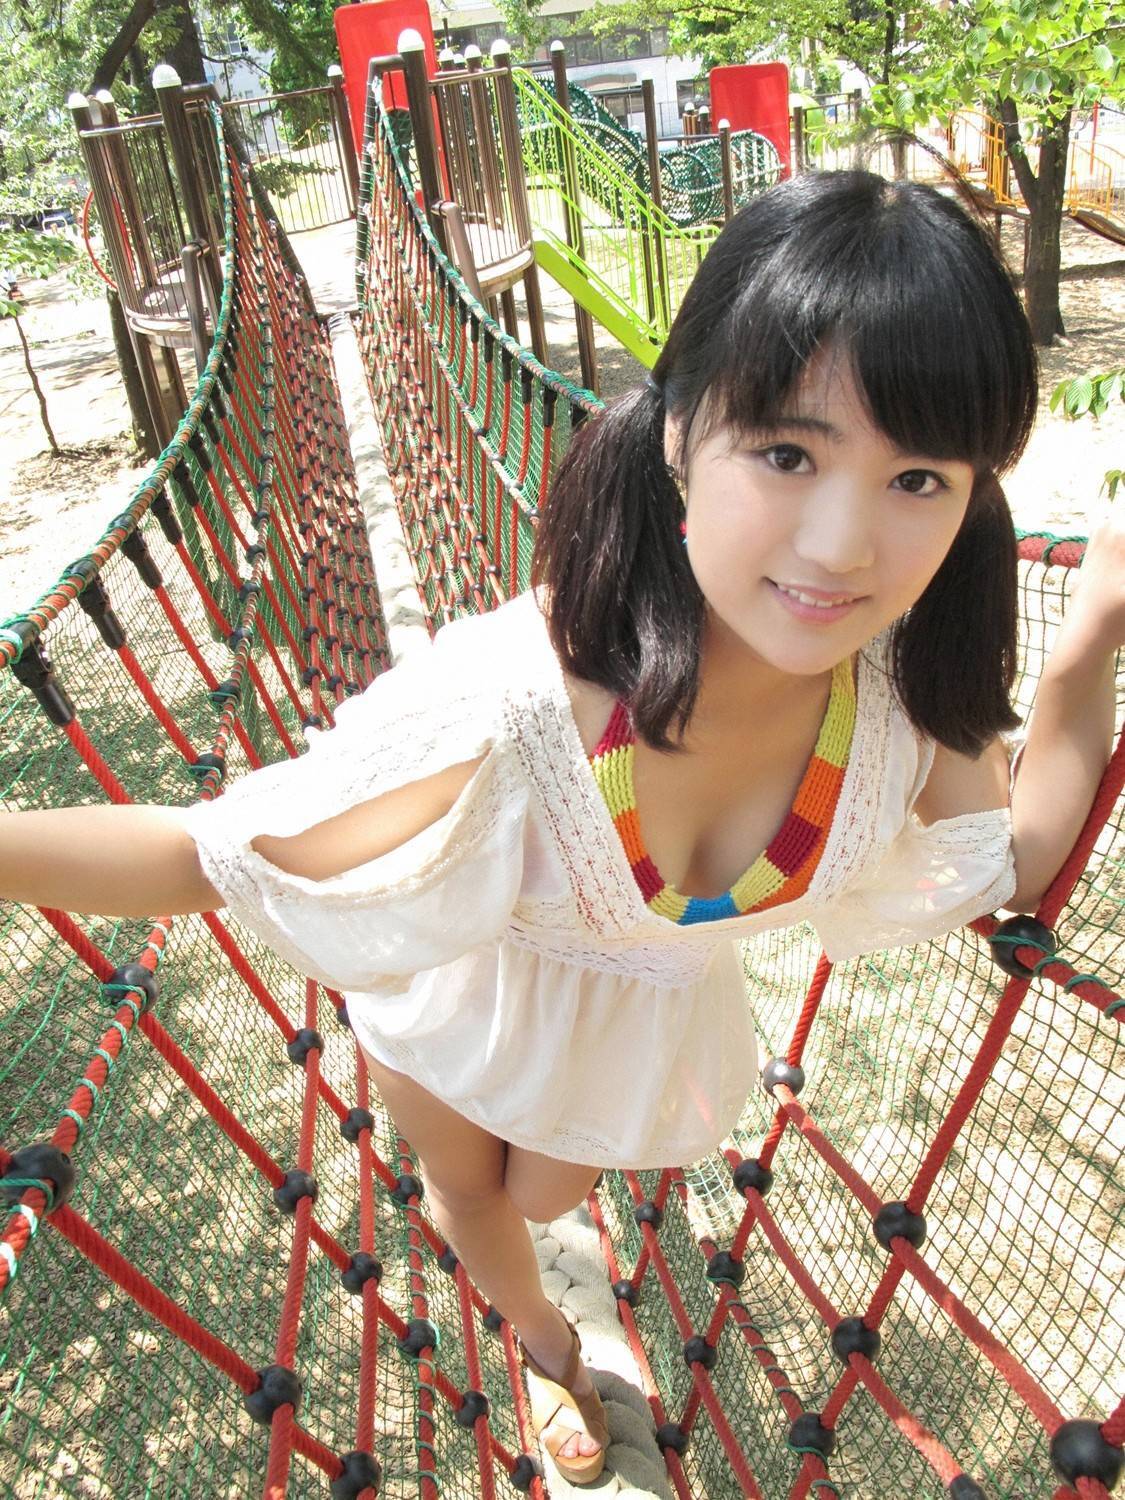 Japanese beauty girl